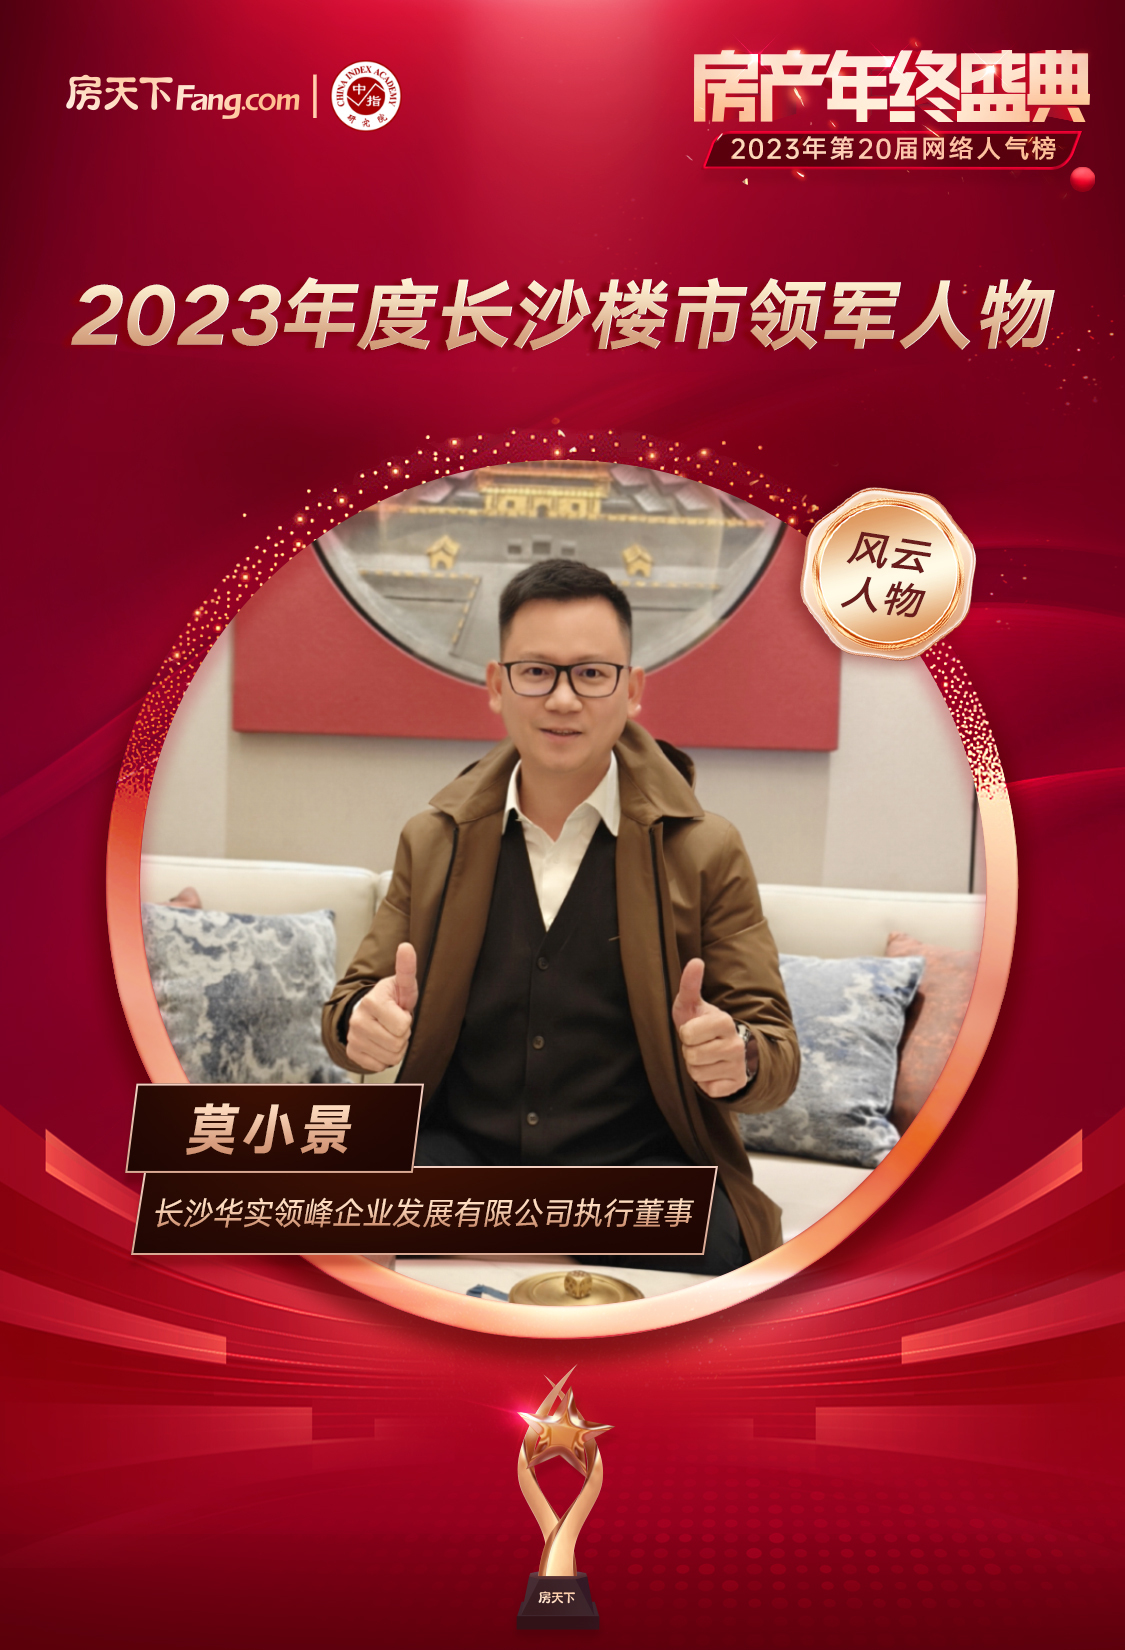 长沙华实领峰莫小景先生荣获“2023年度长沙楼市领军人物”！